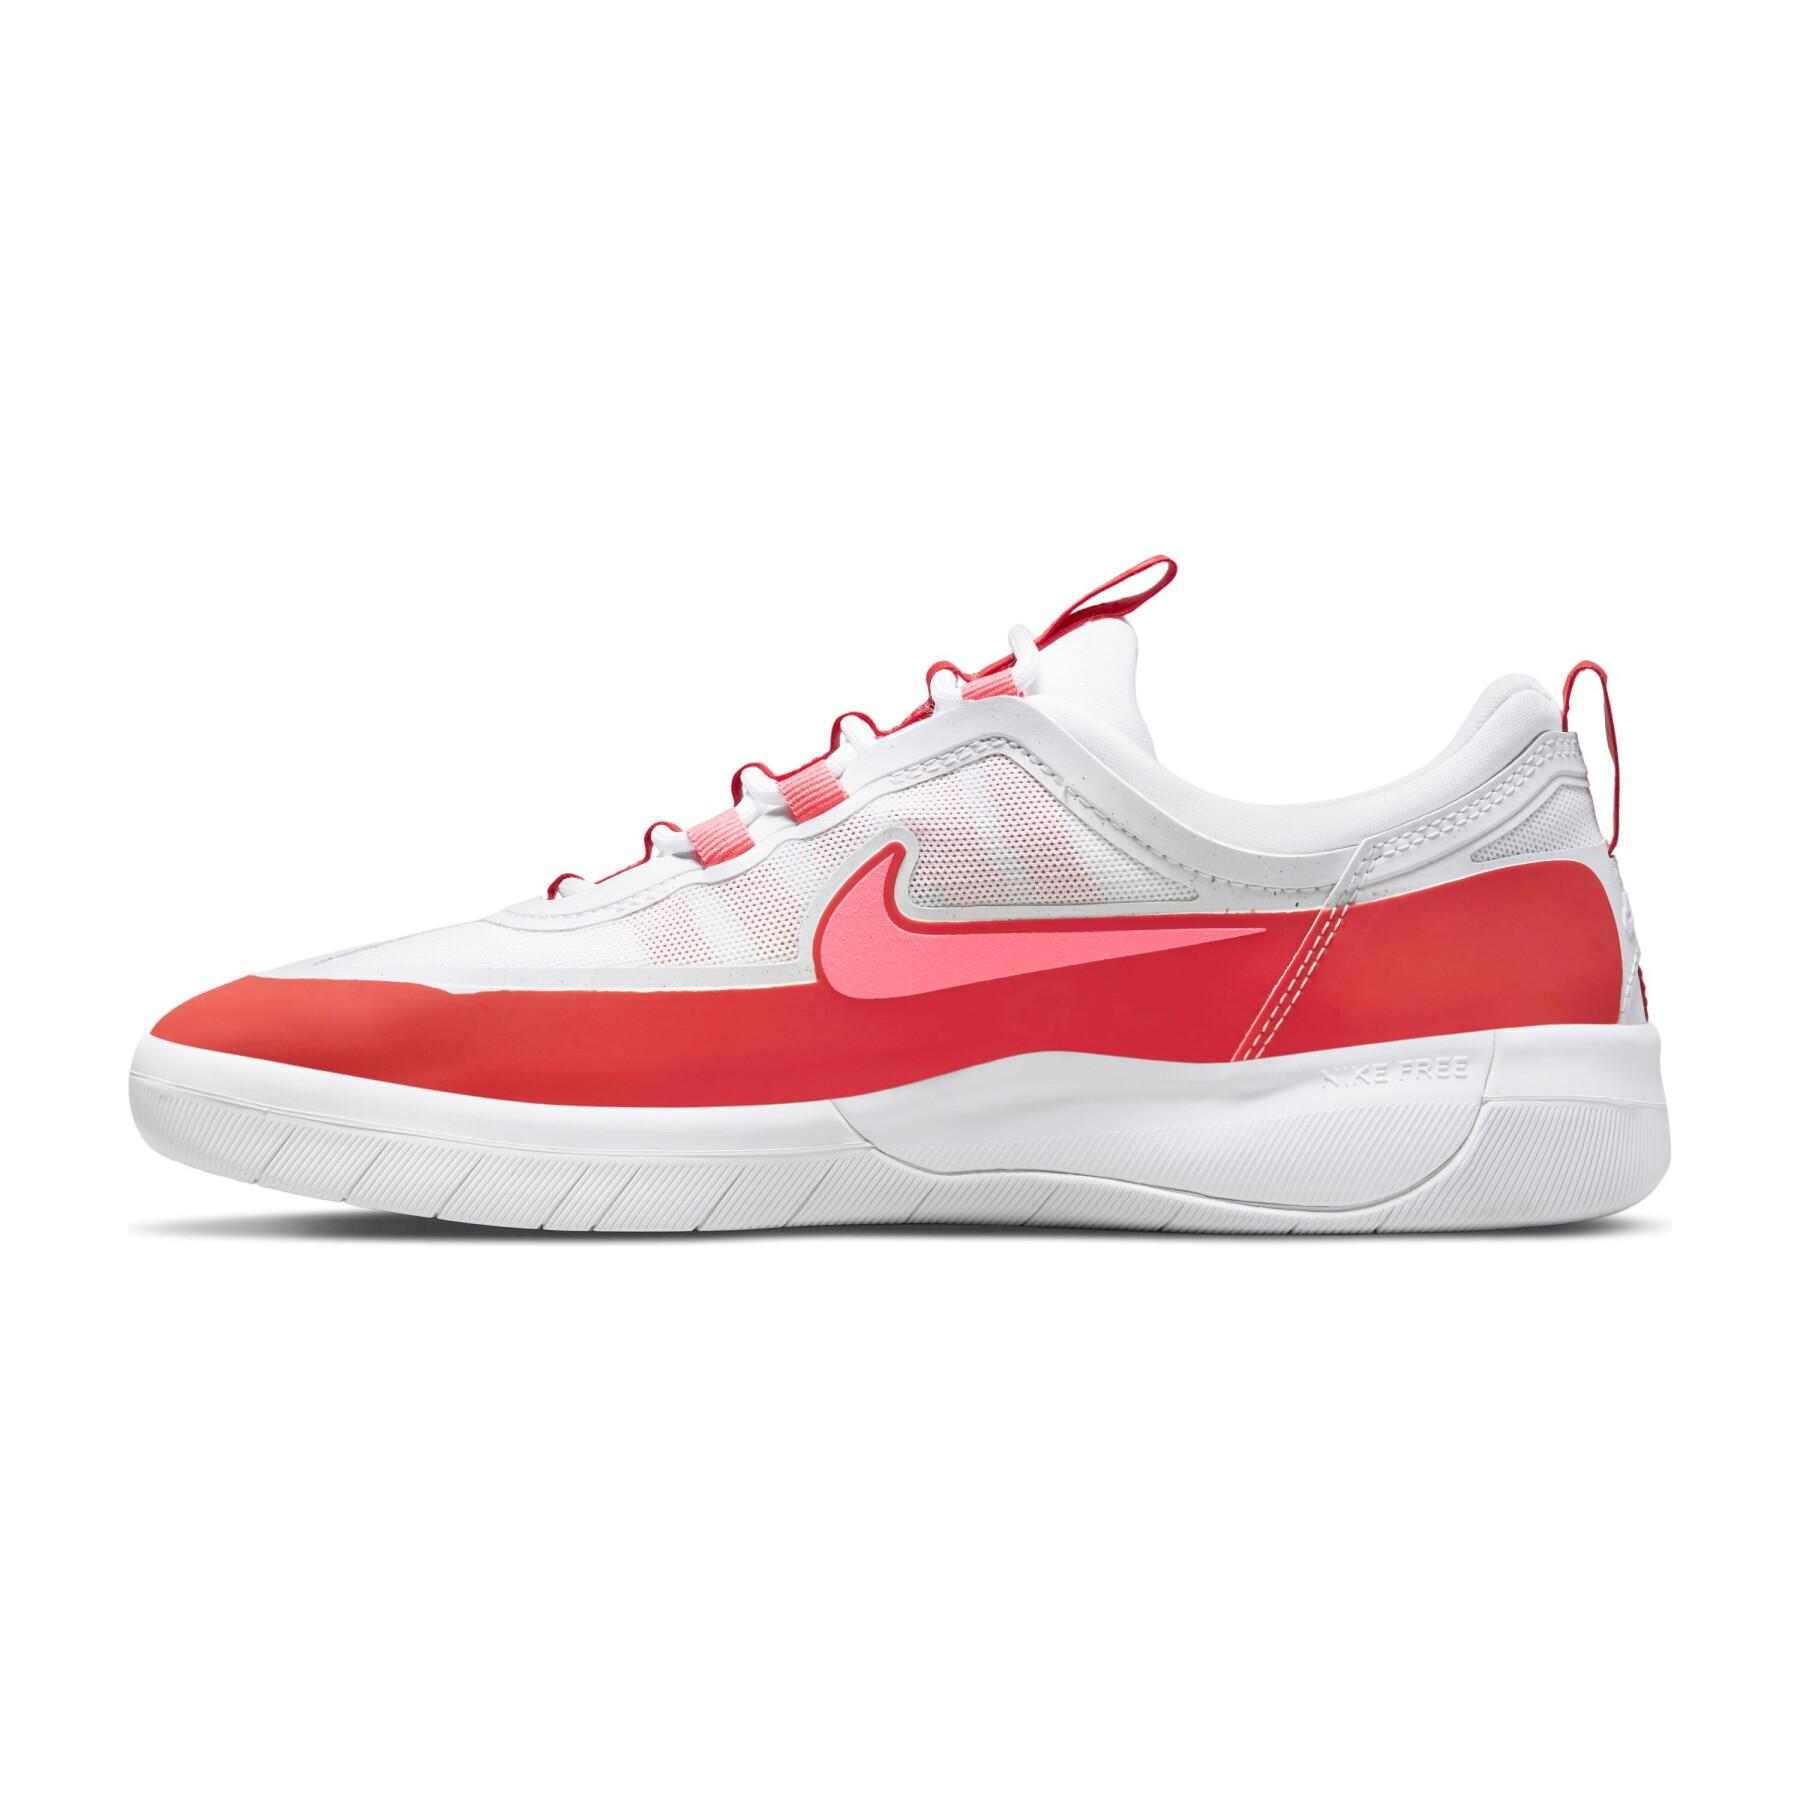 Chaussures Nike SB Nyjah Free 2